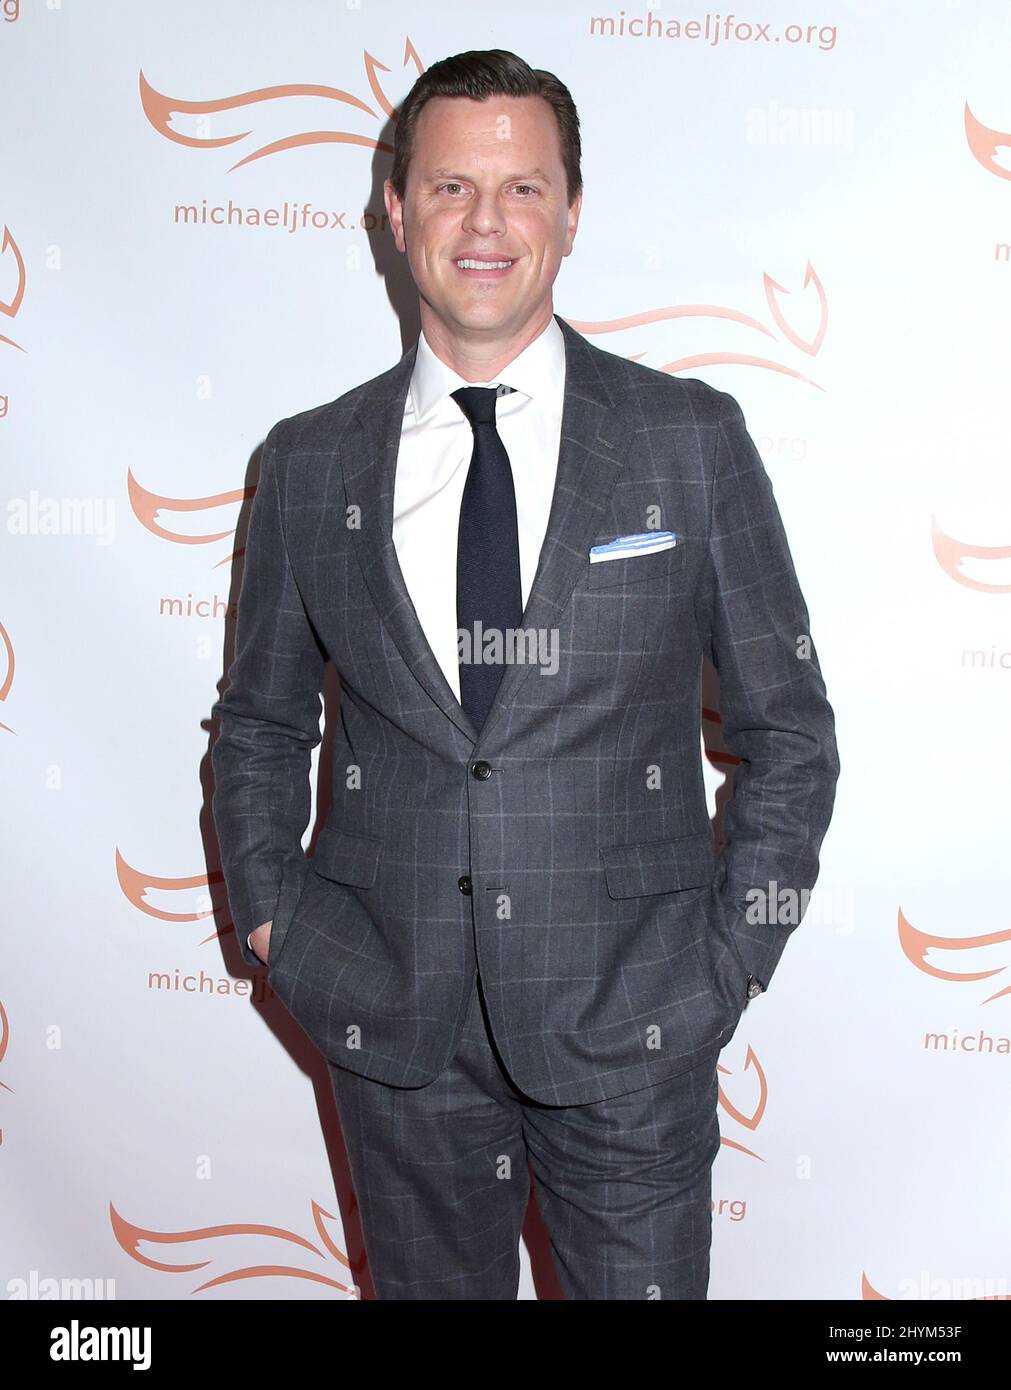 Willie Geist ha partecipato al Gala 2019 della Fondazione Michael J. Fox 'Una cosa divertente è accaduto sulla strada per Cure Parkinson' tenuto all'Hilton New York il 16 novembre 2019 a New York City, USA. Foto Stock